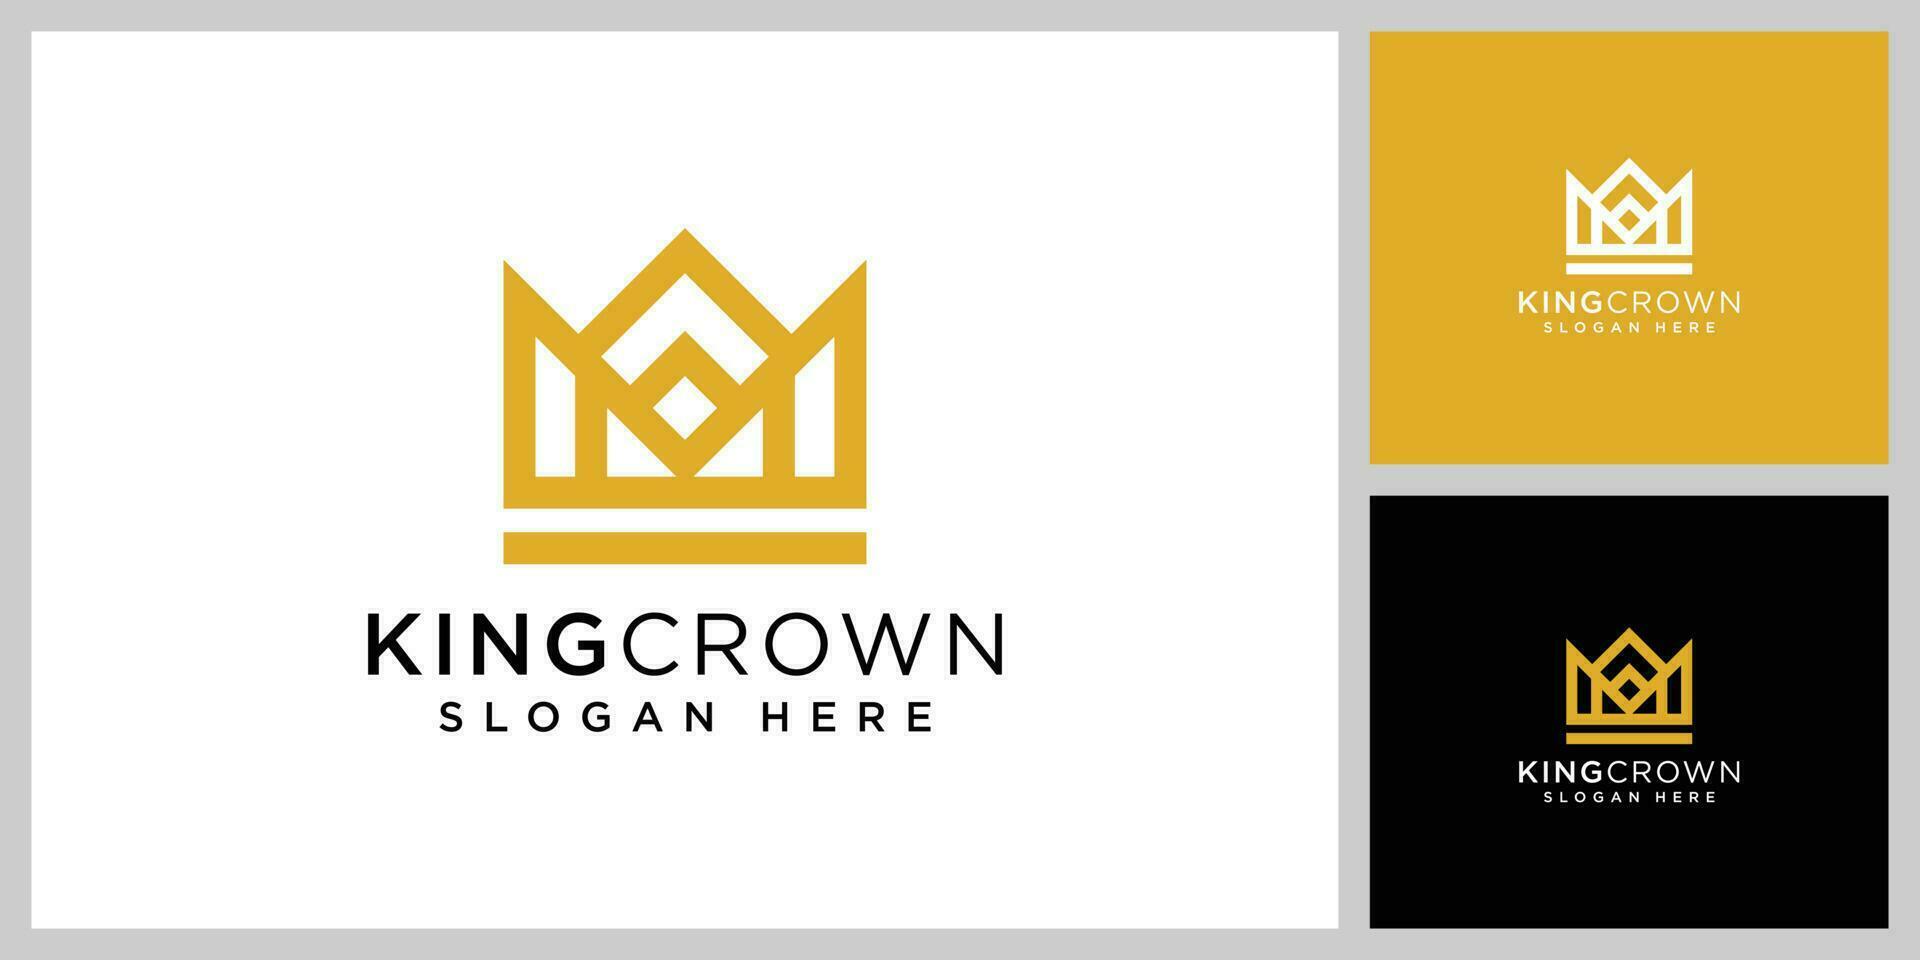 crown logo vector design template